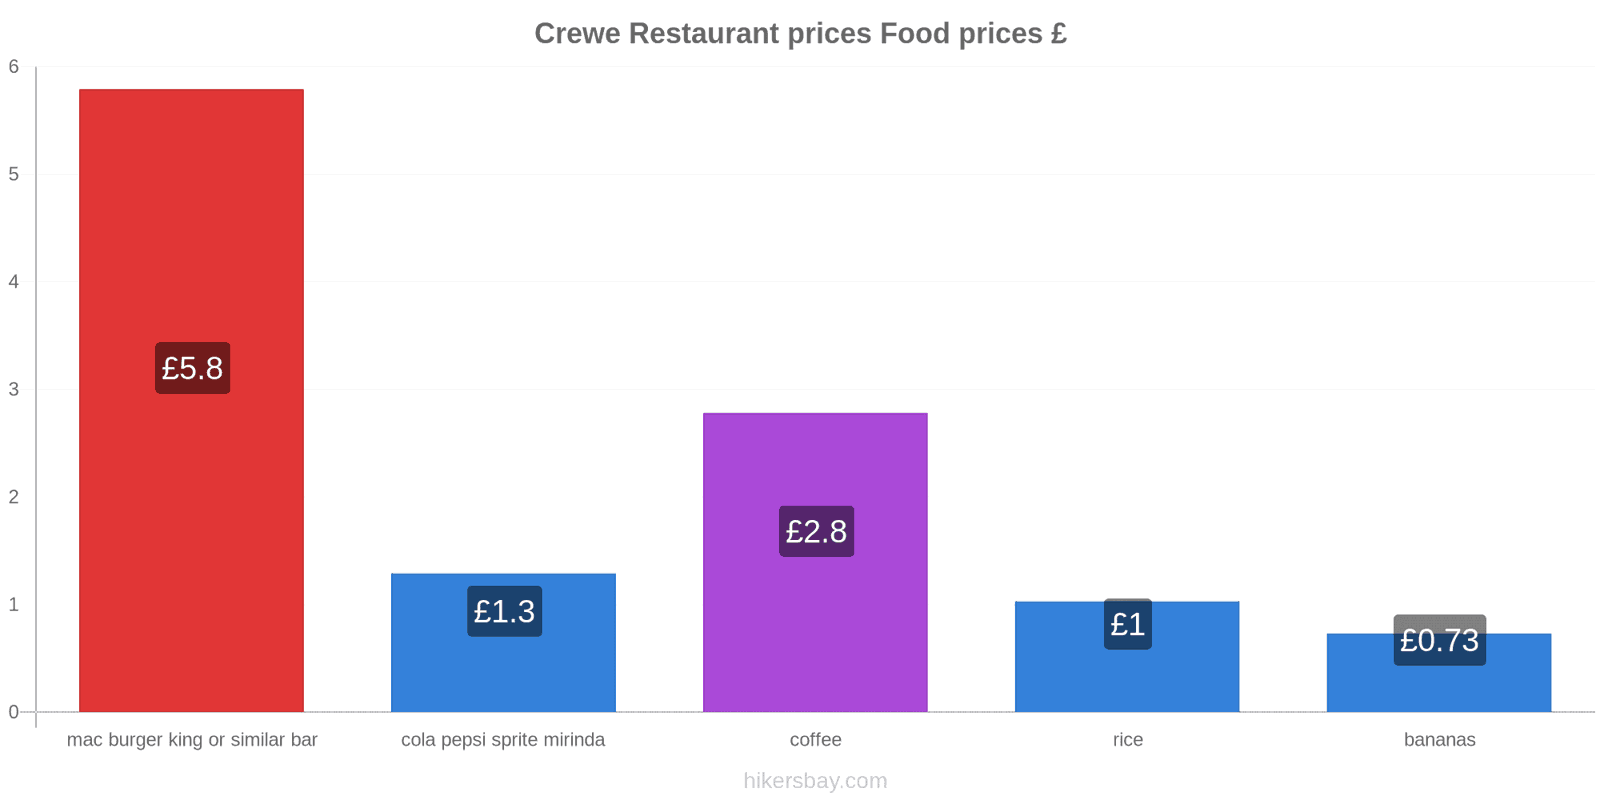 Crewe price changes hikersbay.com